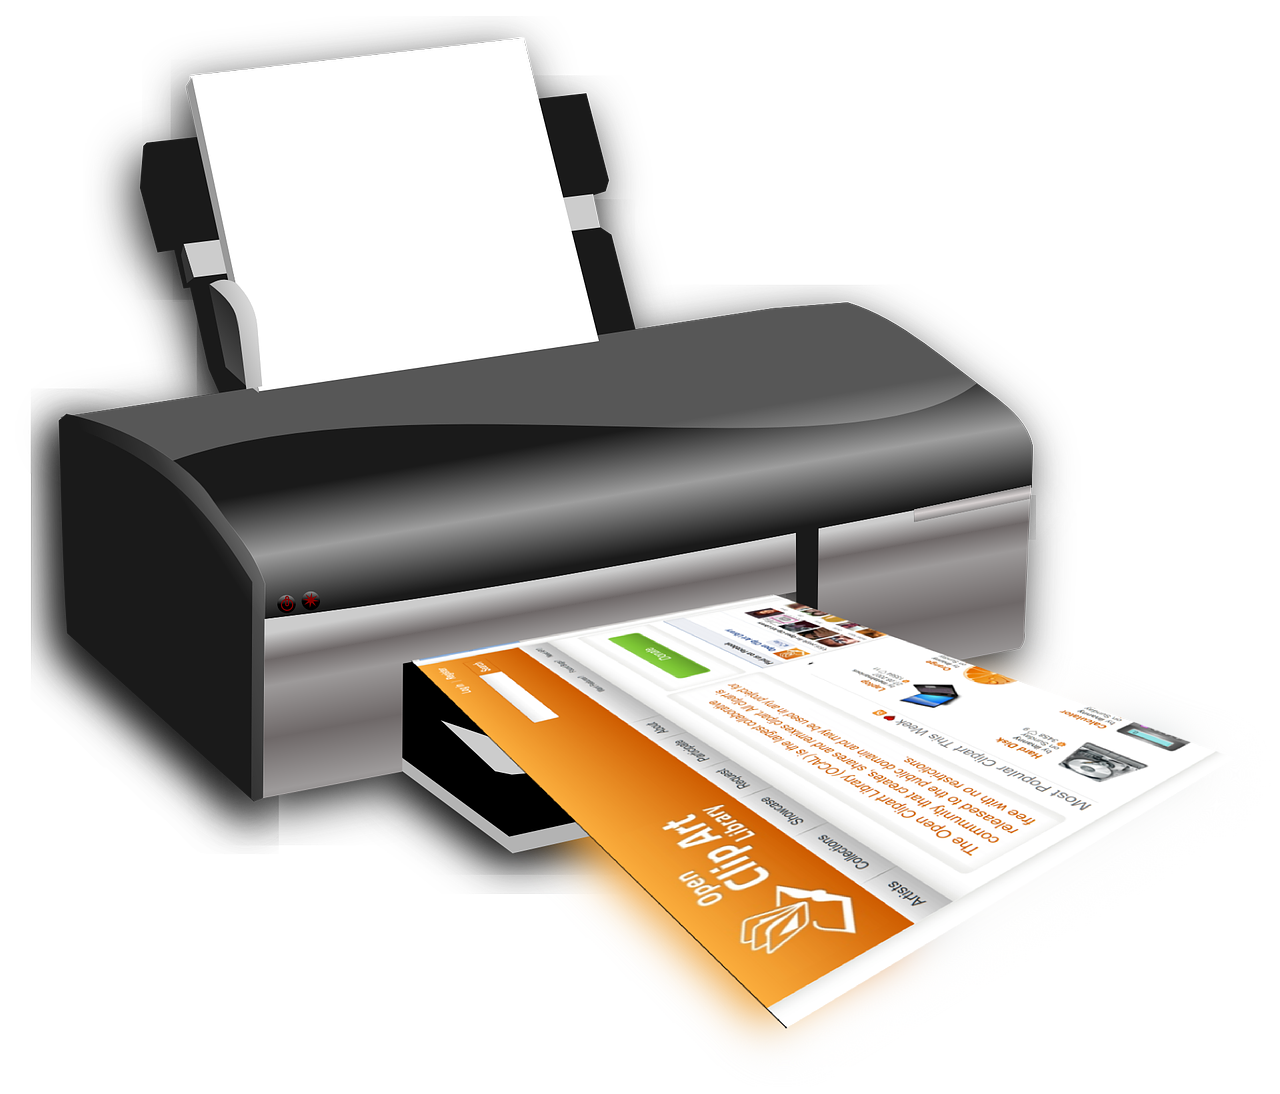 Impression brochure A5 pas cher : Comment imprimer des brochures de qualité à petit prix